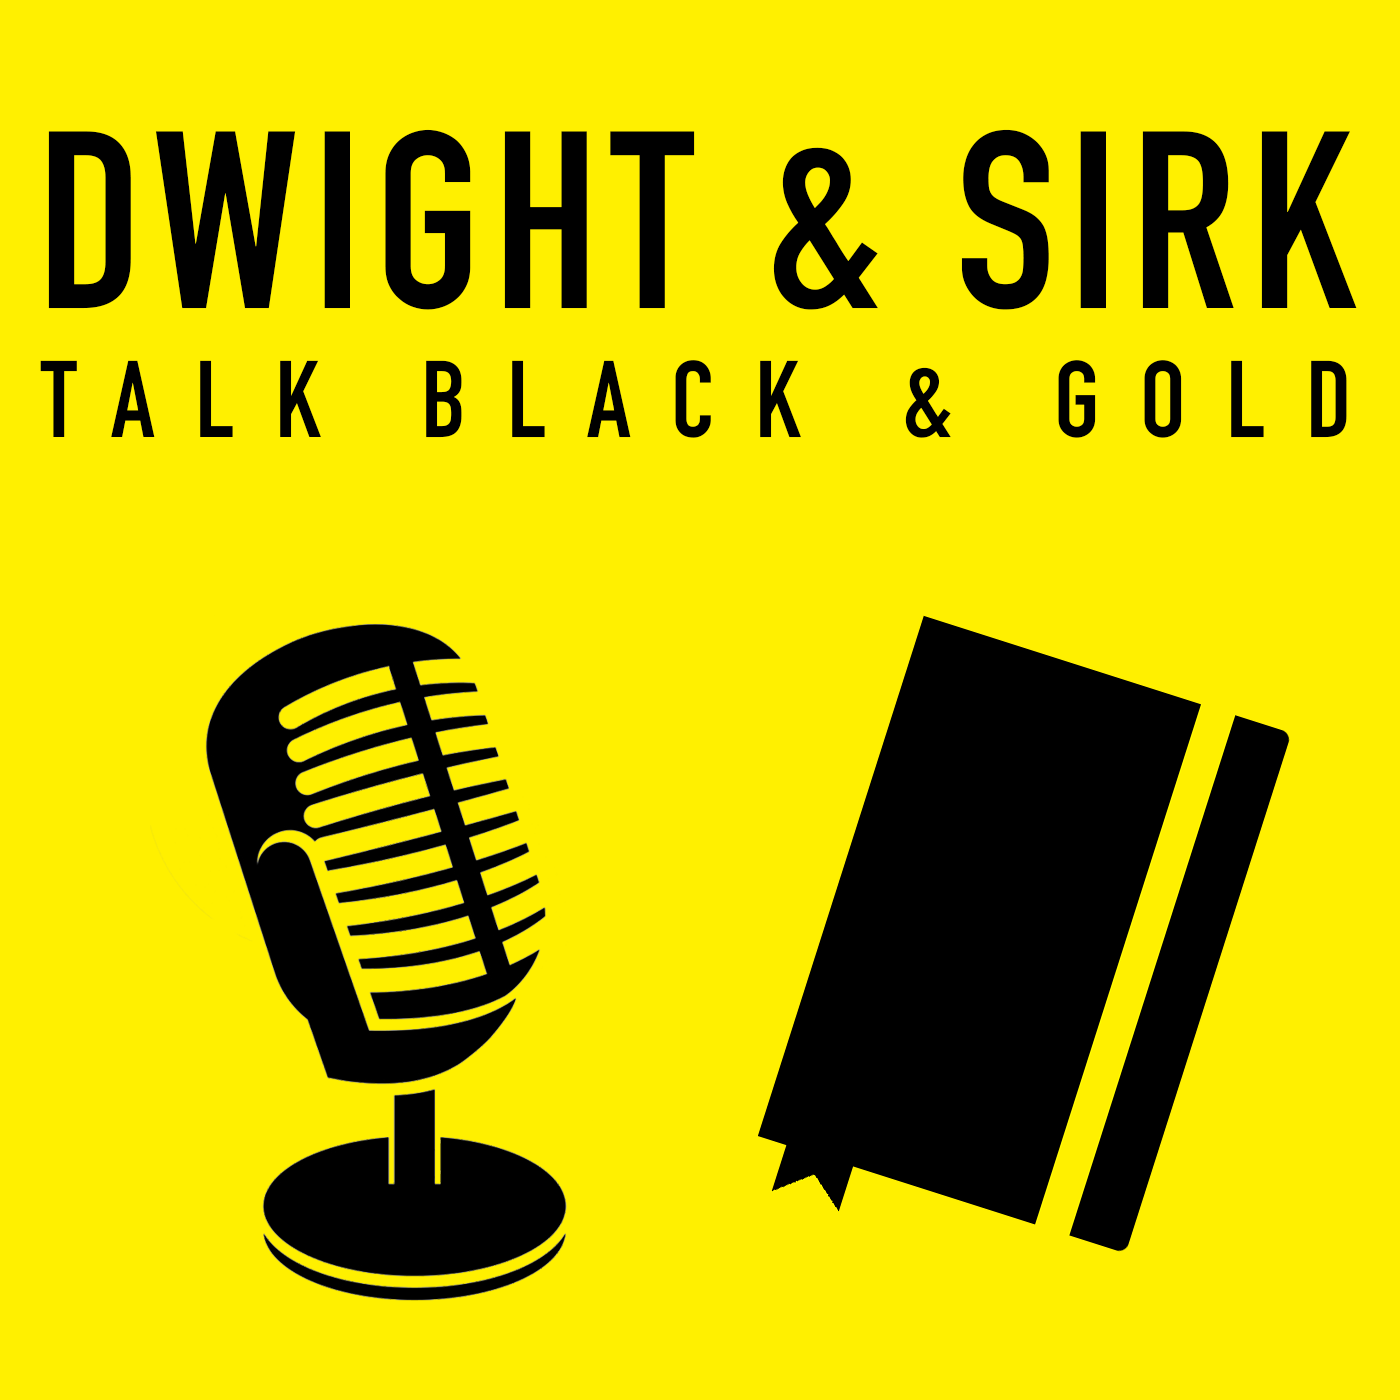 Dwight & Sirk Talk Black & Gold